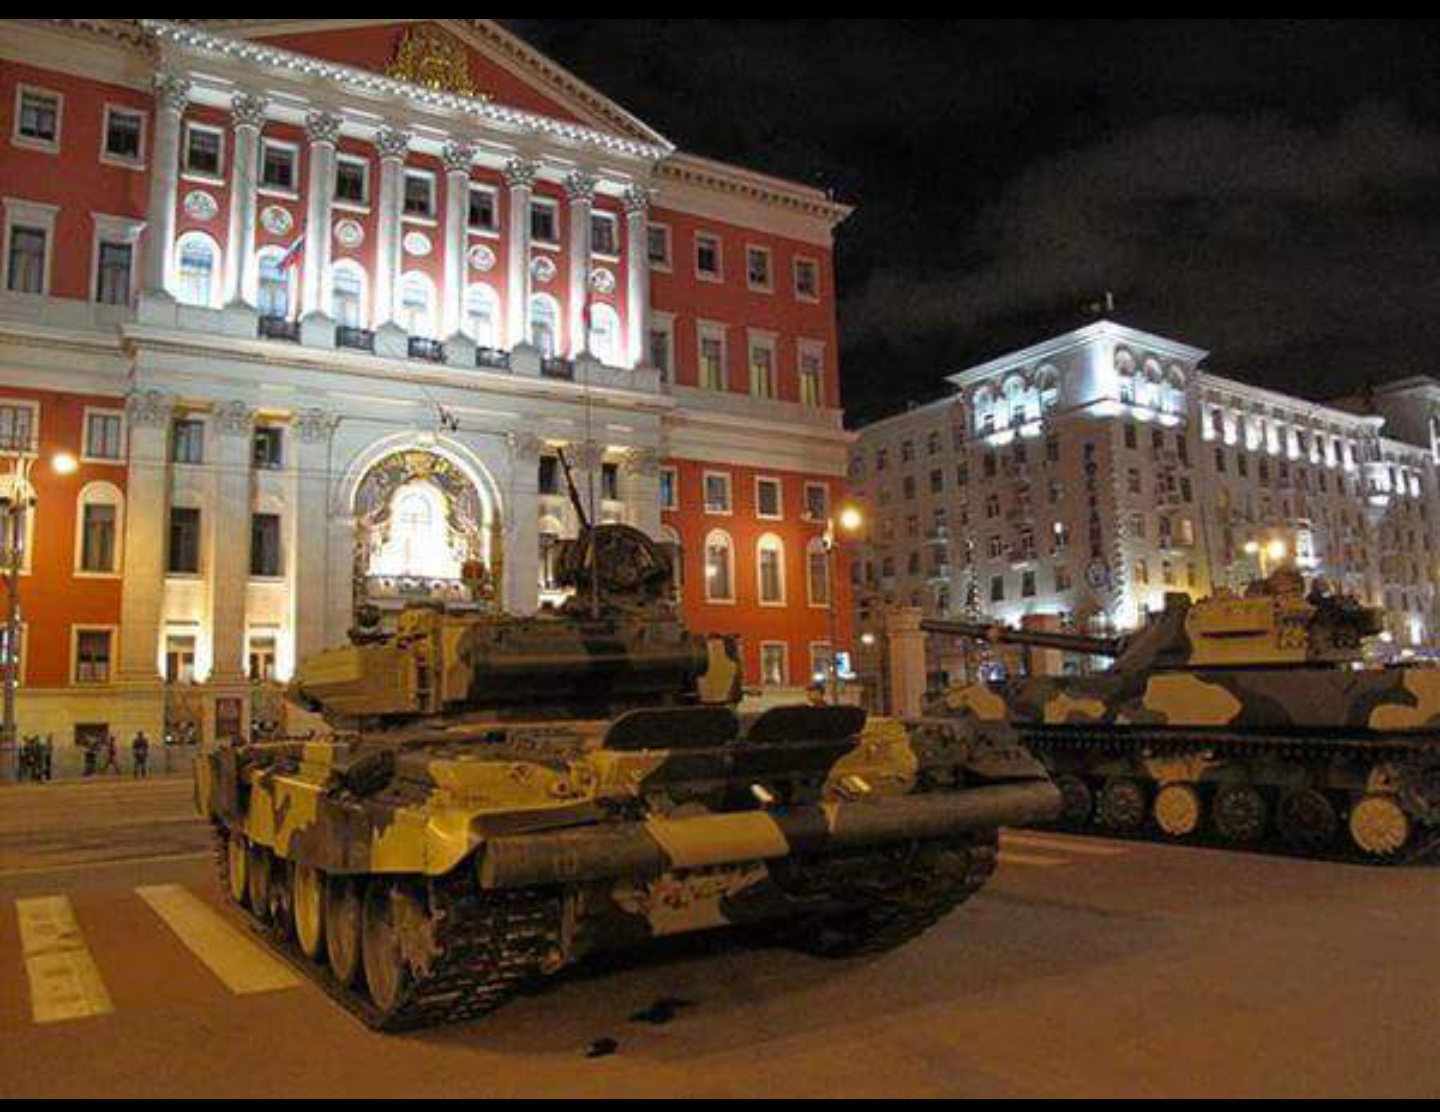 танки на красной площади 2015